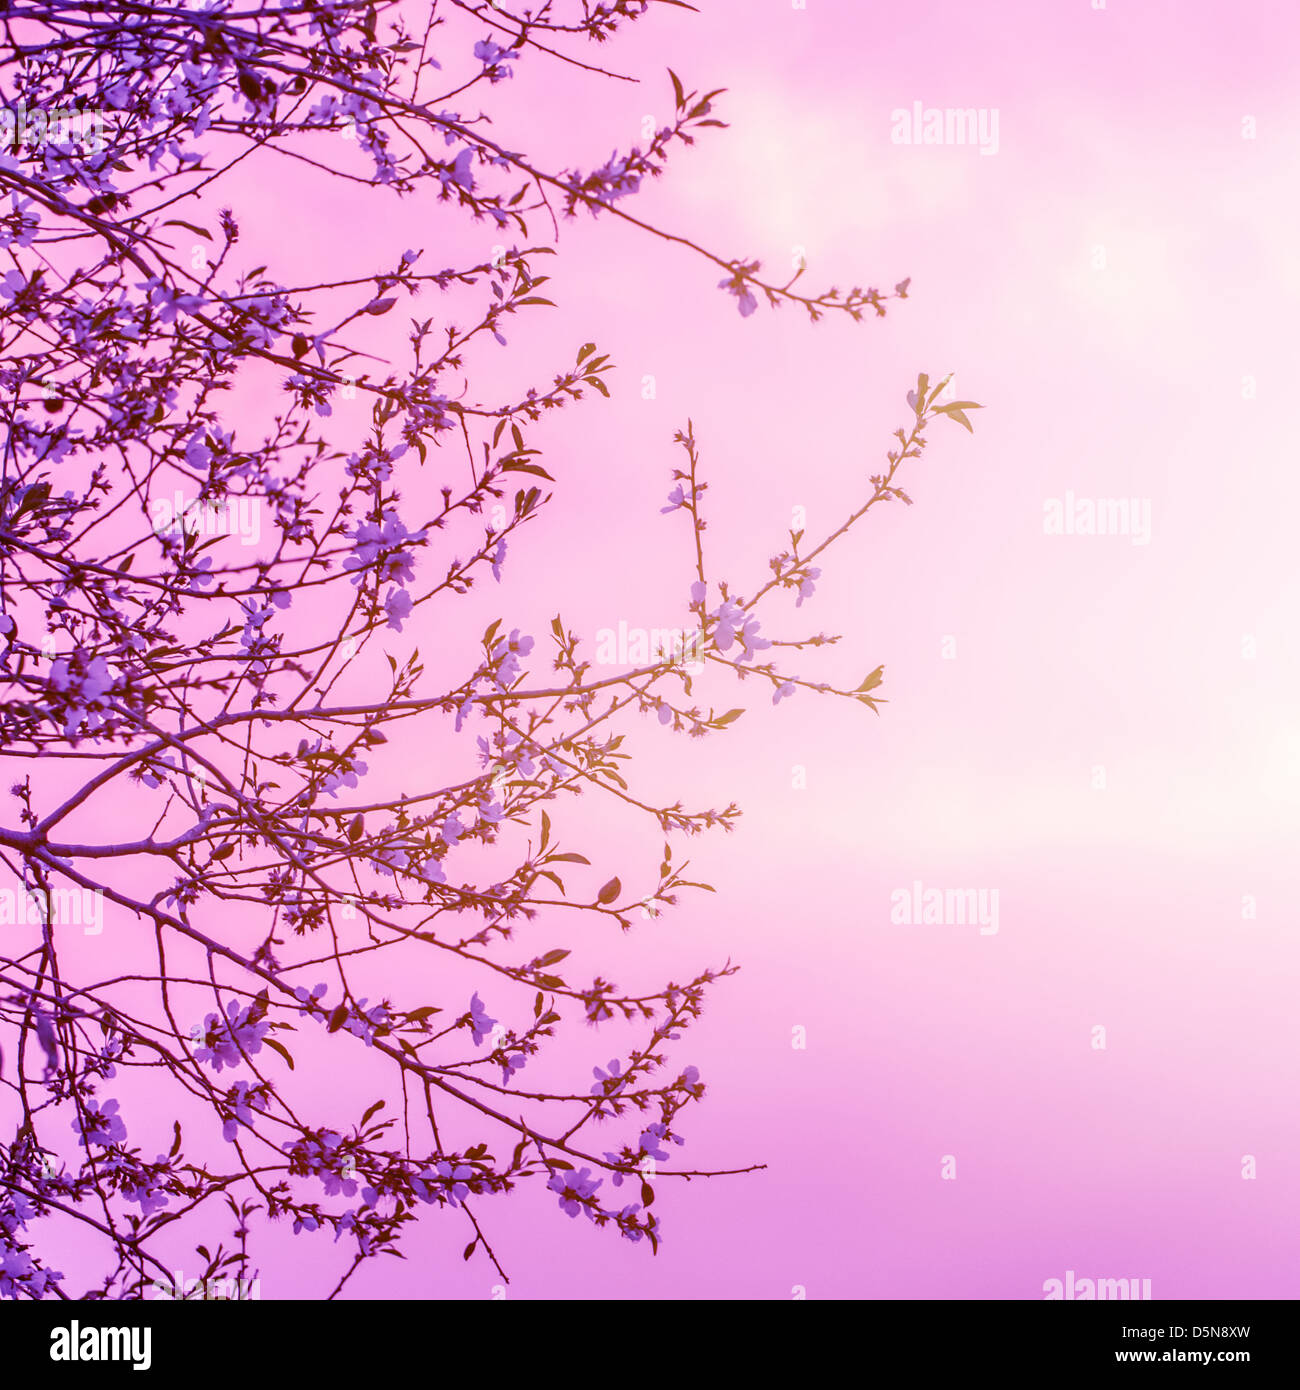 Kirschbaum blüht auf schönen rosa Sonnenuntergang Hintergrund, kleine weiße Blüten auf Baum Zweig, floral Grenze, Frühling-Natur Stockfoto